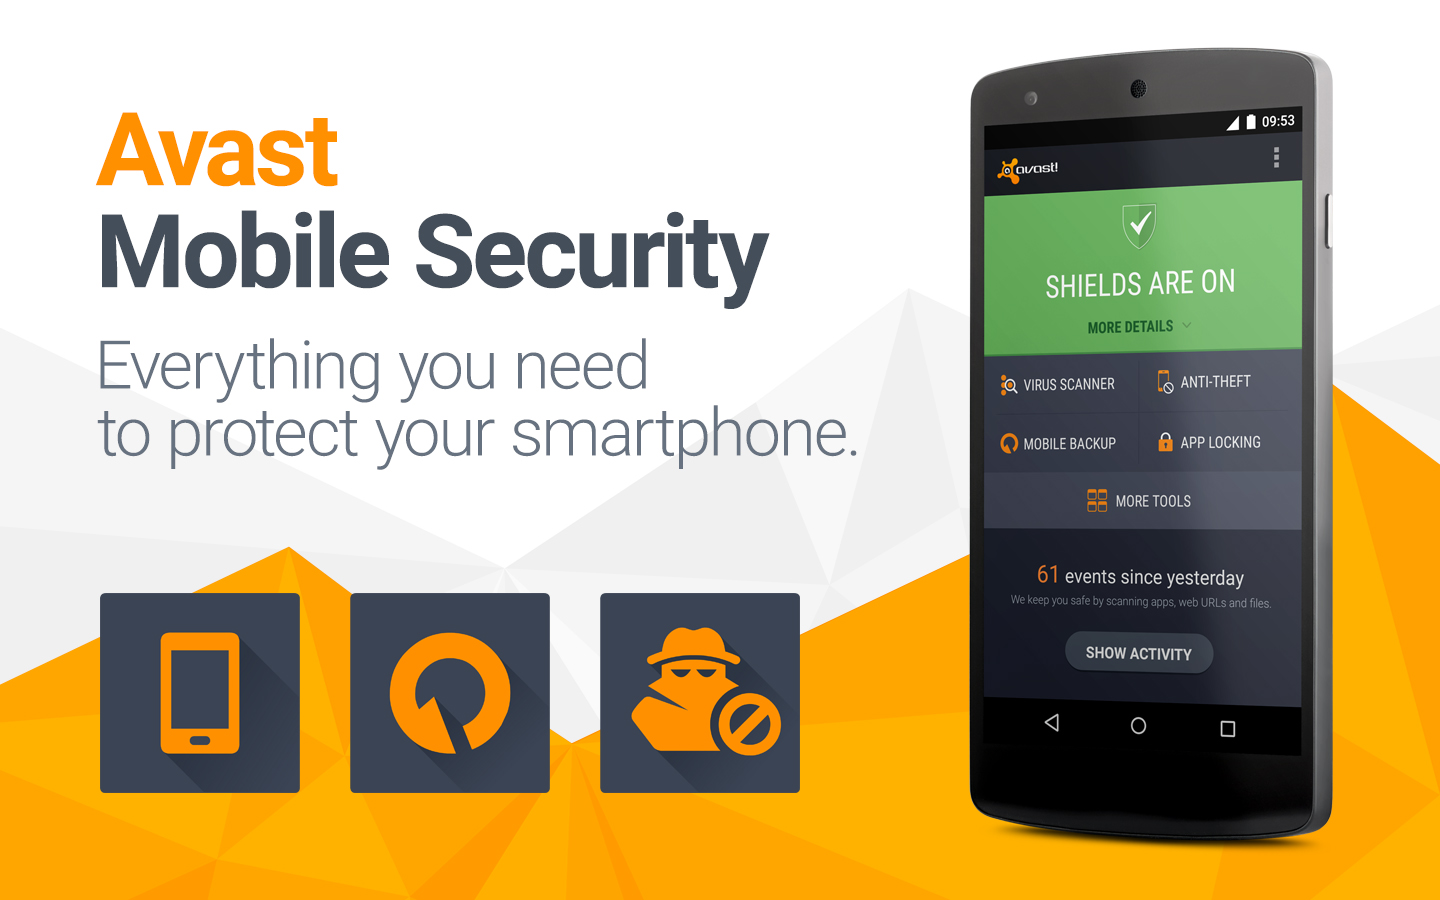 O Avast Mobile Security é um aplicativo de segurança móvel com a mais alta classificação.